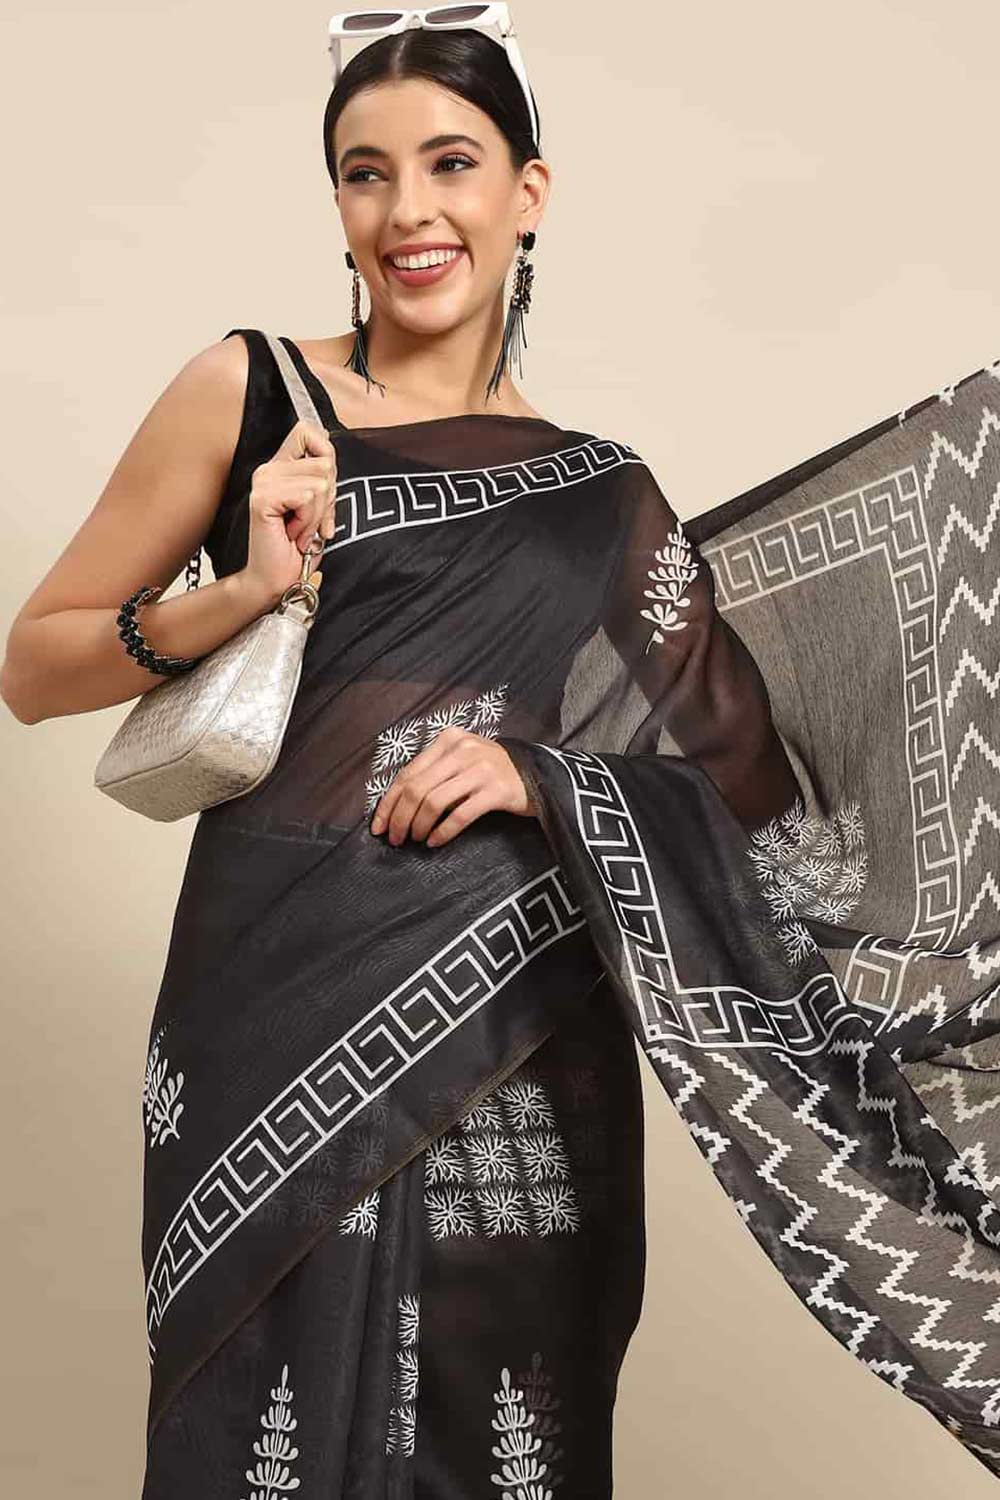 Buy Black Cotton Ethnic Motifs Banarasi Saree Online